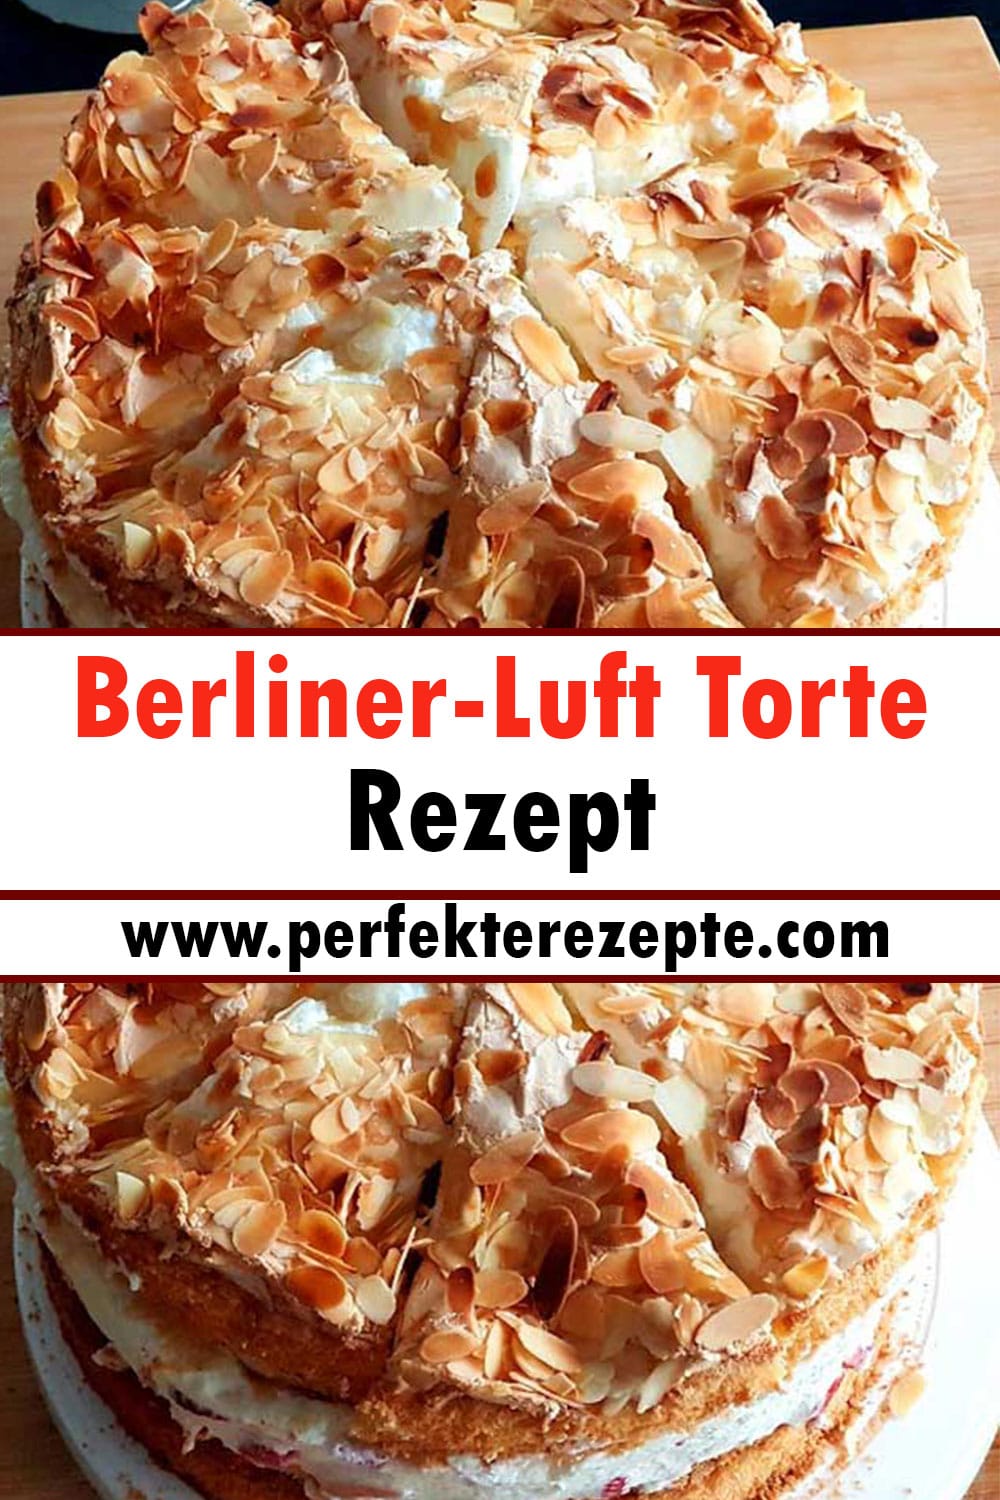 Berliner-Luft Torte Rezept